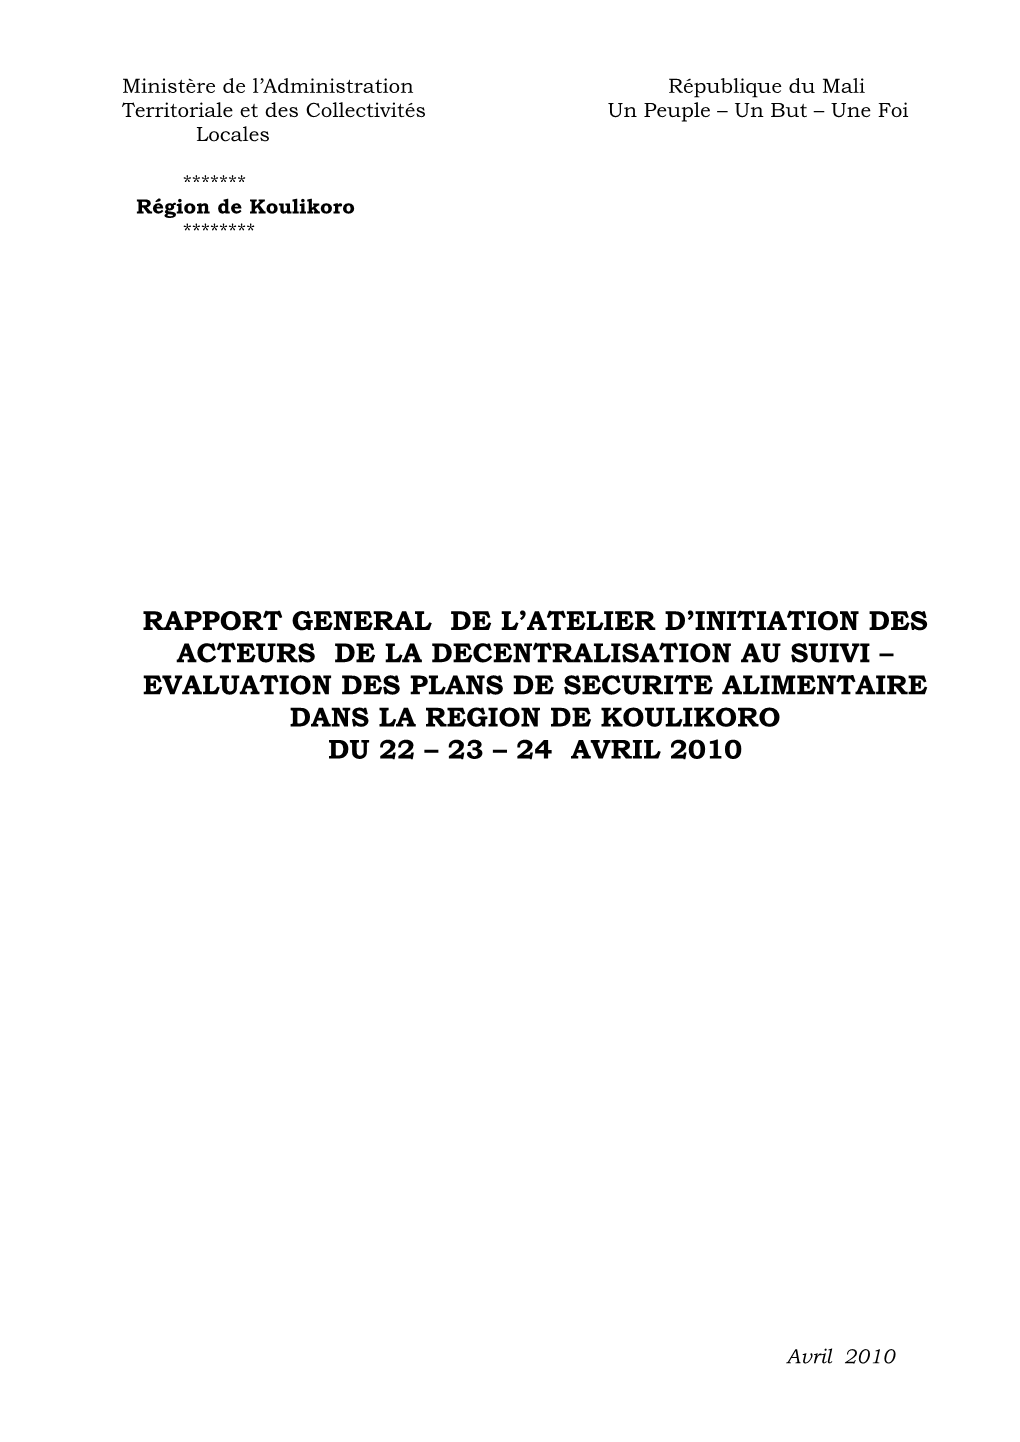 Rapport General De L'atelier D'initiation Des Acteurs De